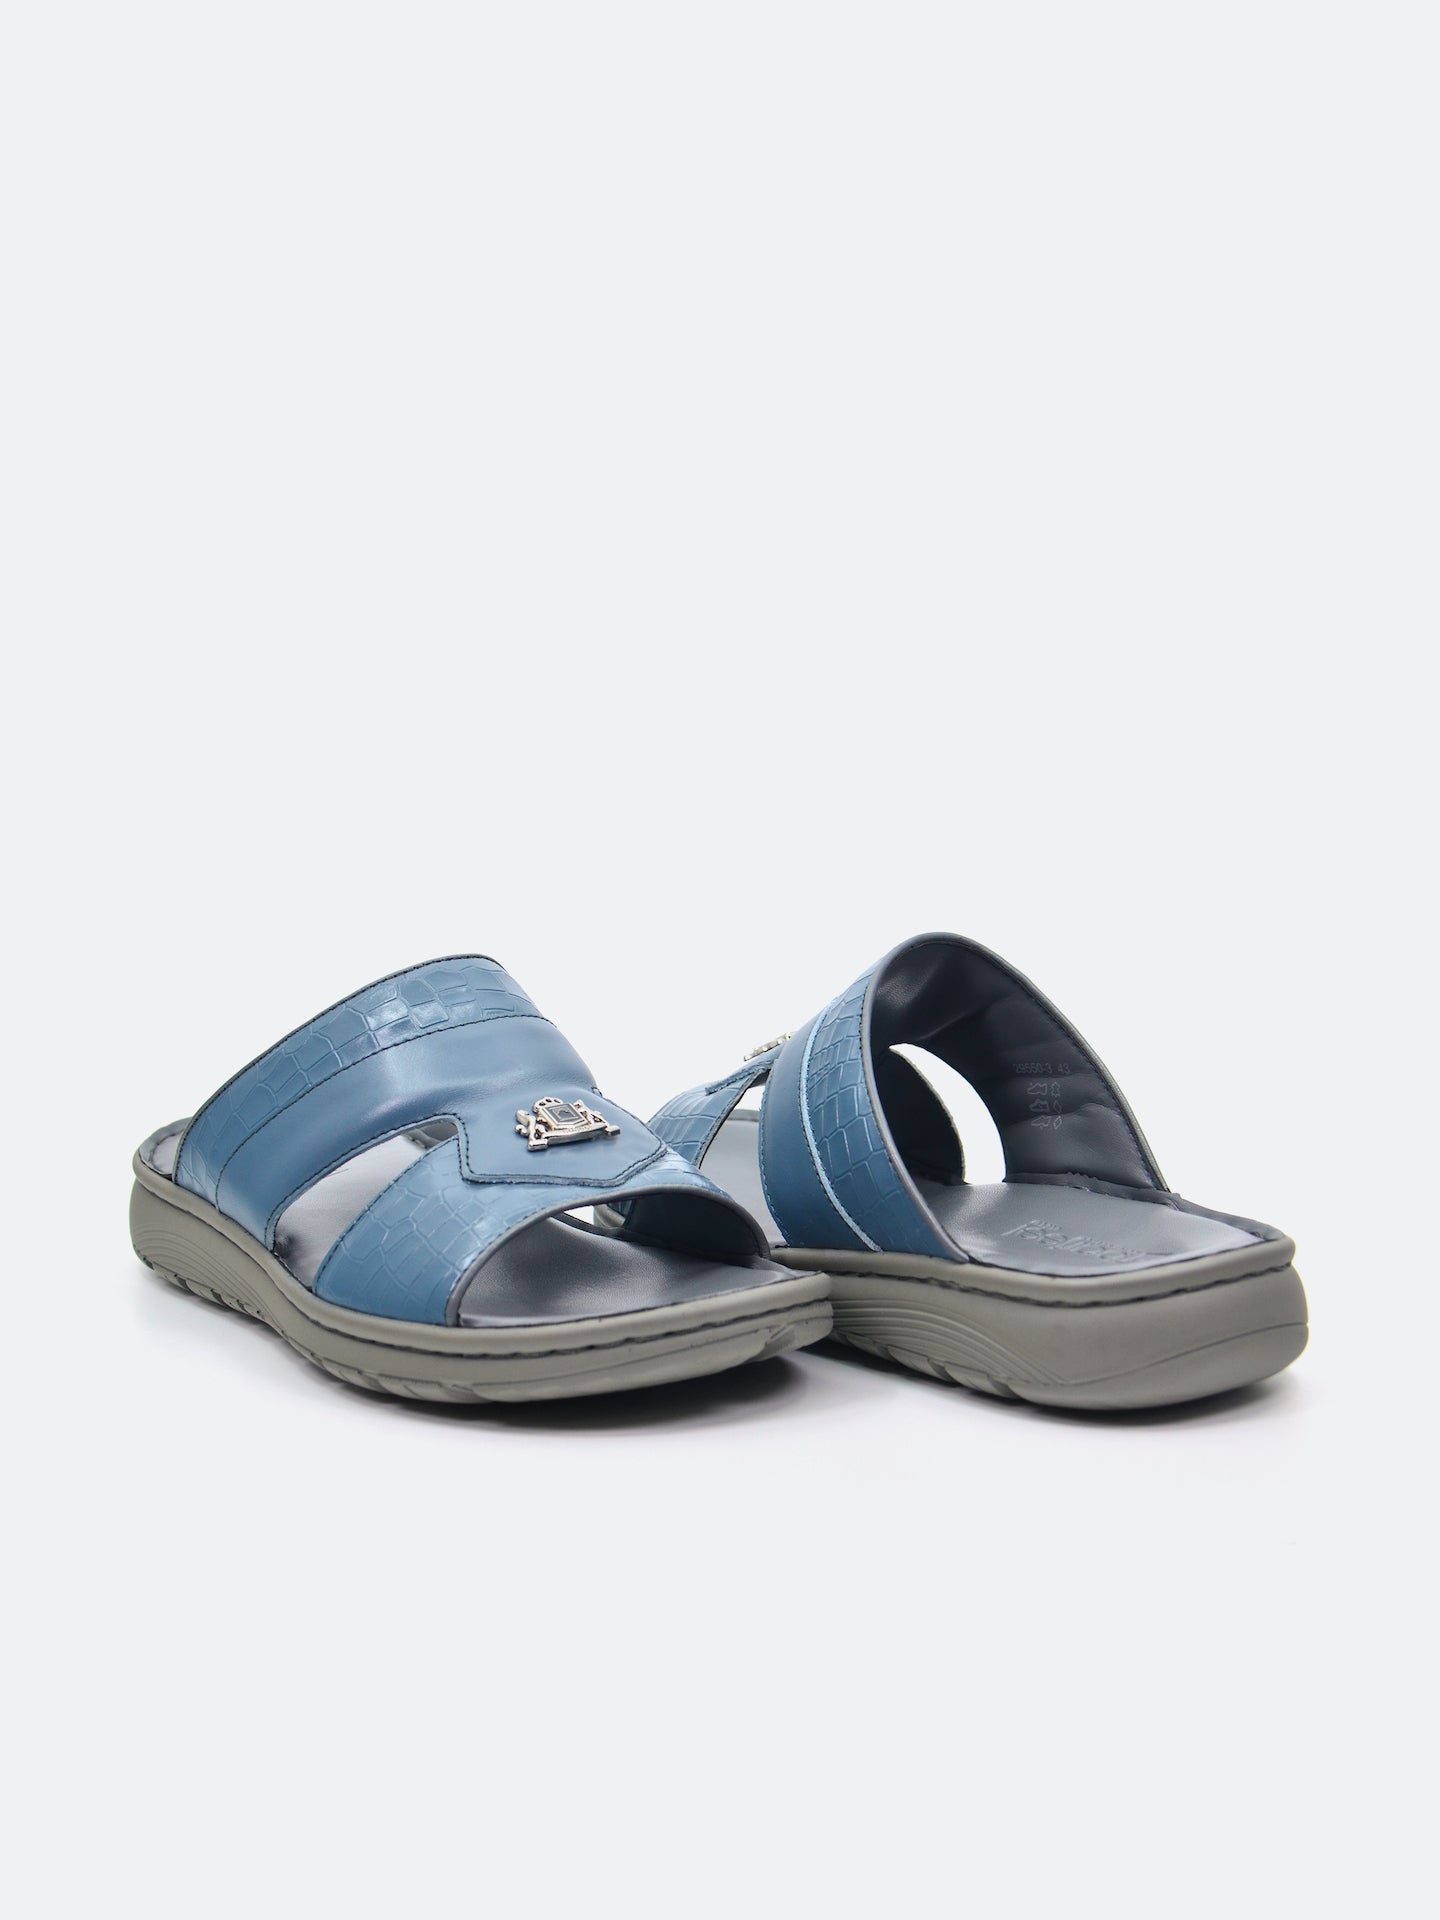 Barjeel Uno 29550-3 Men's Arabic Sandals #color_Grey